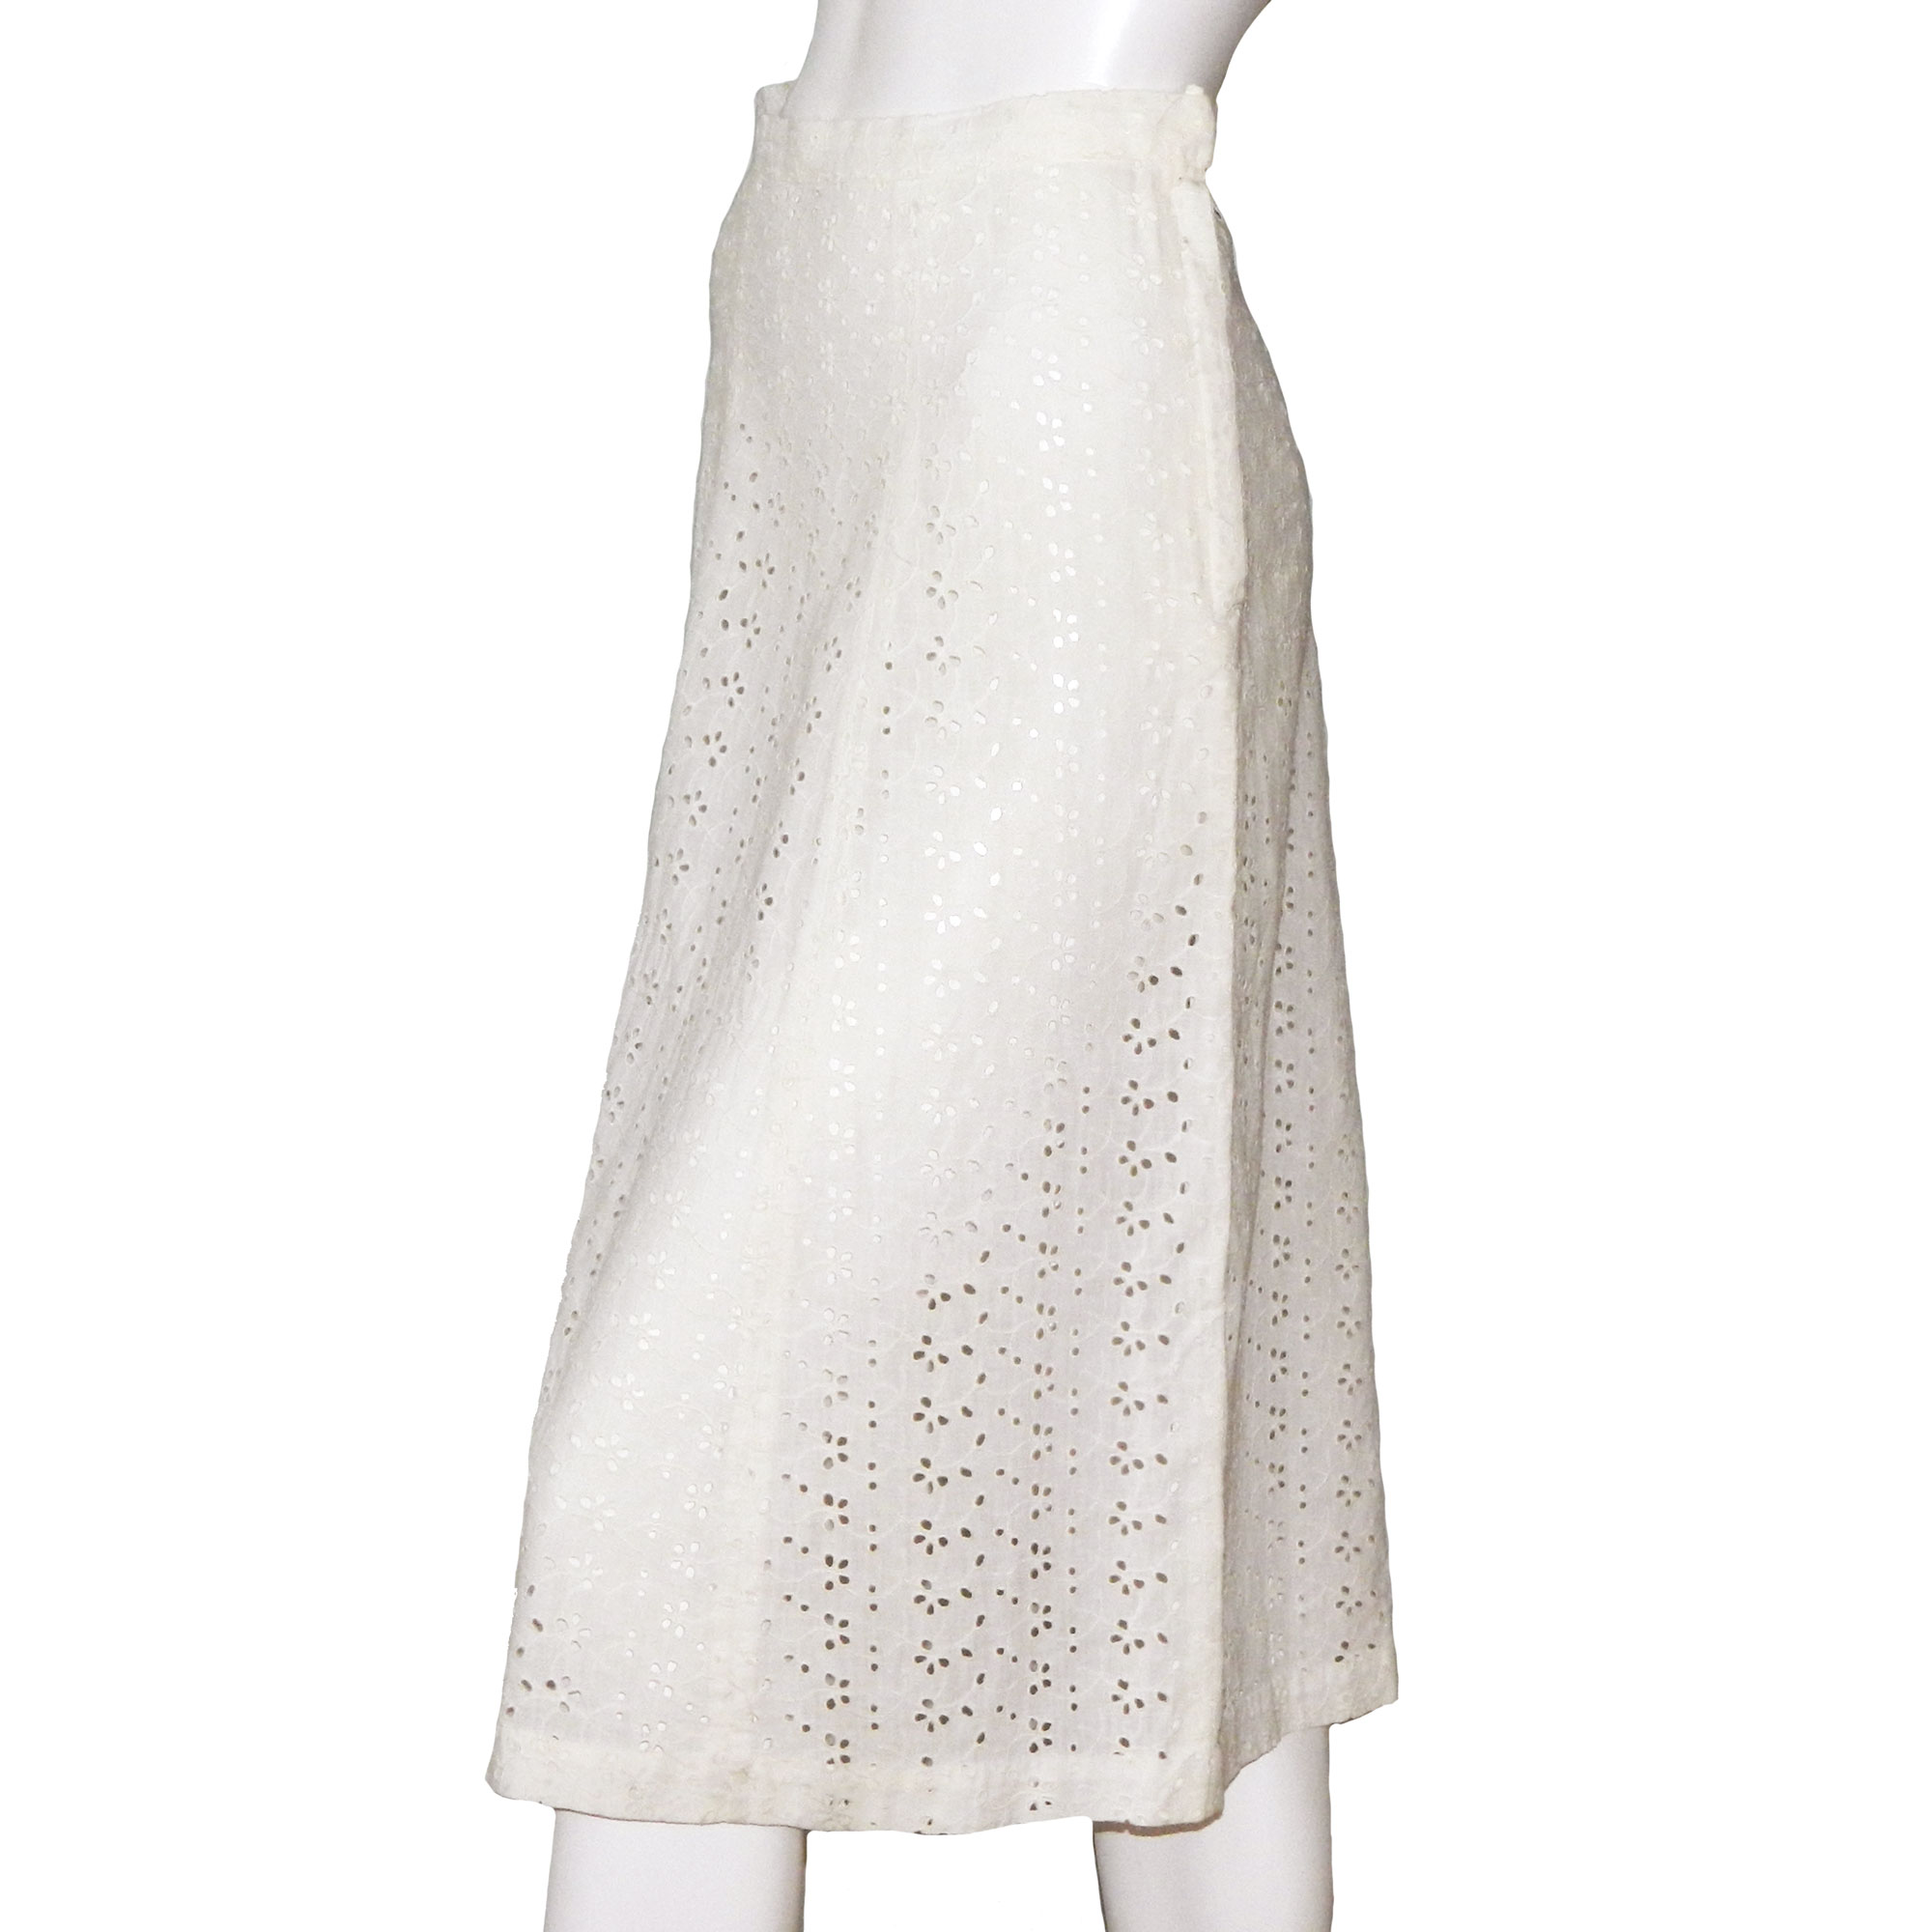 vintage white skirt